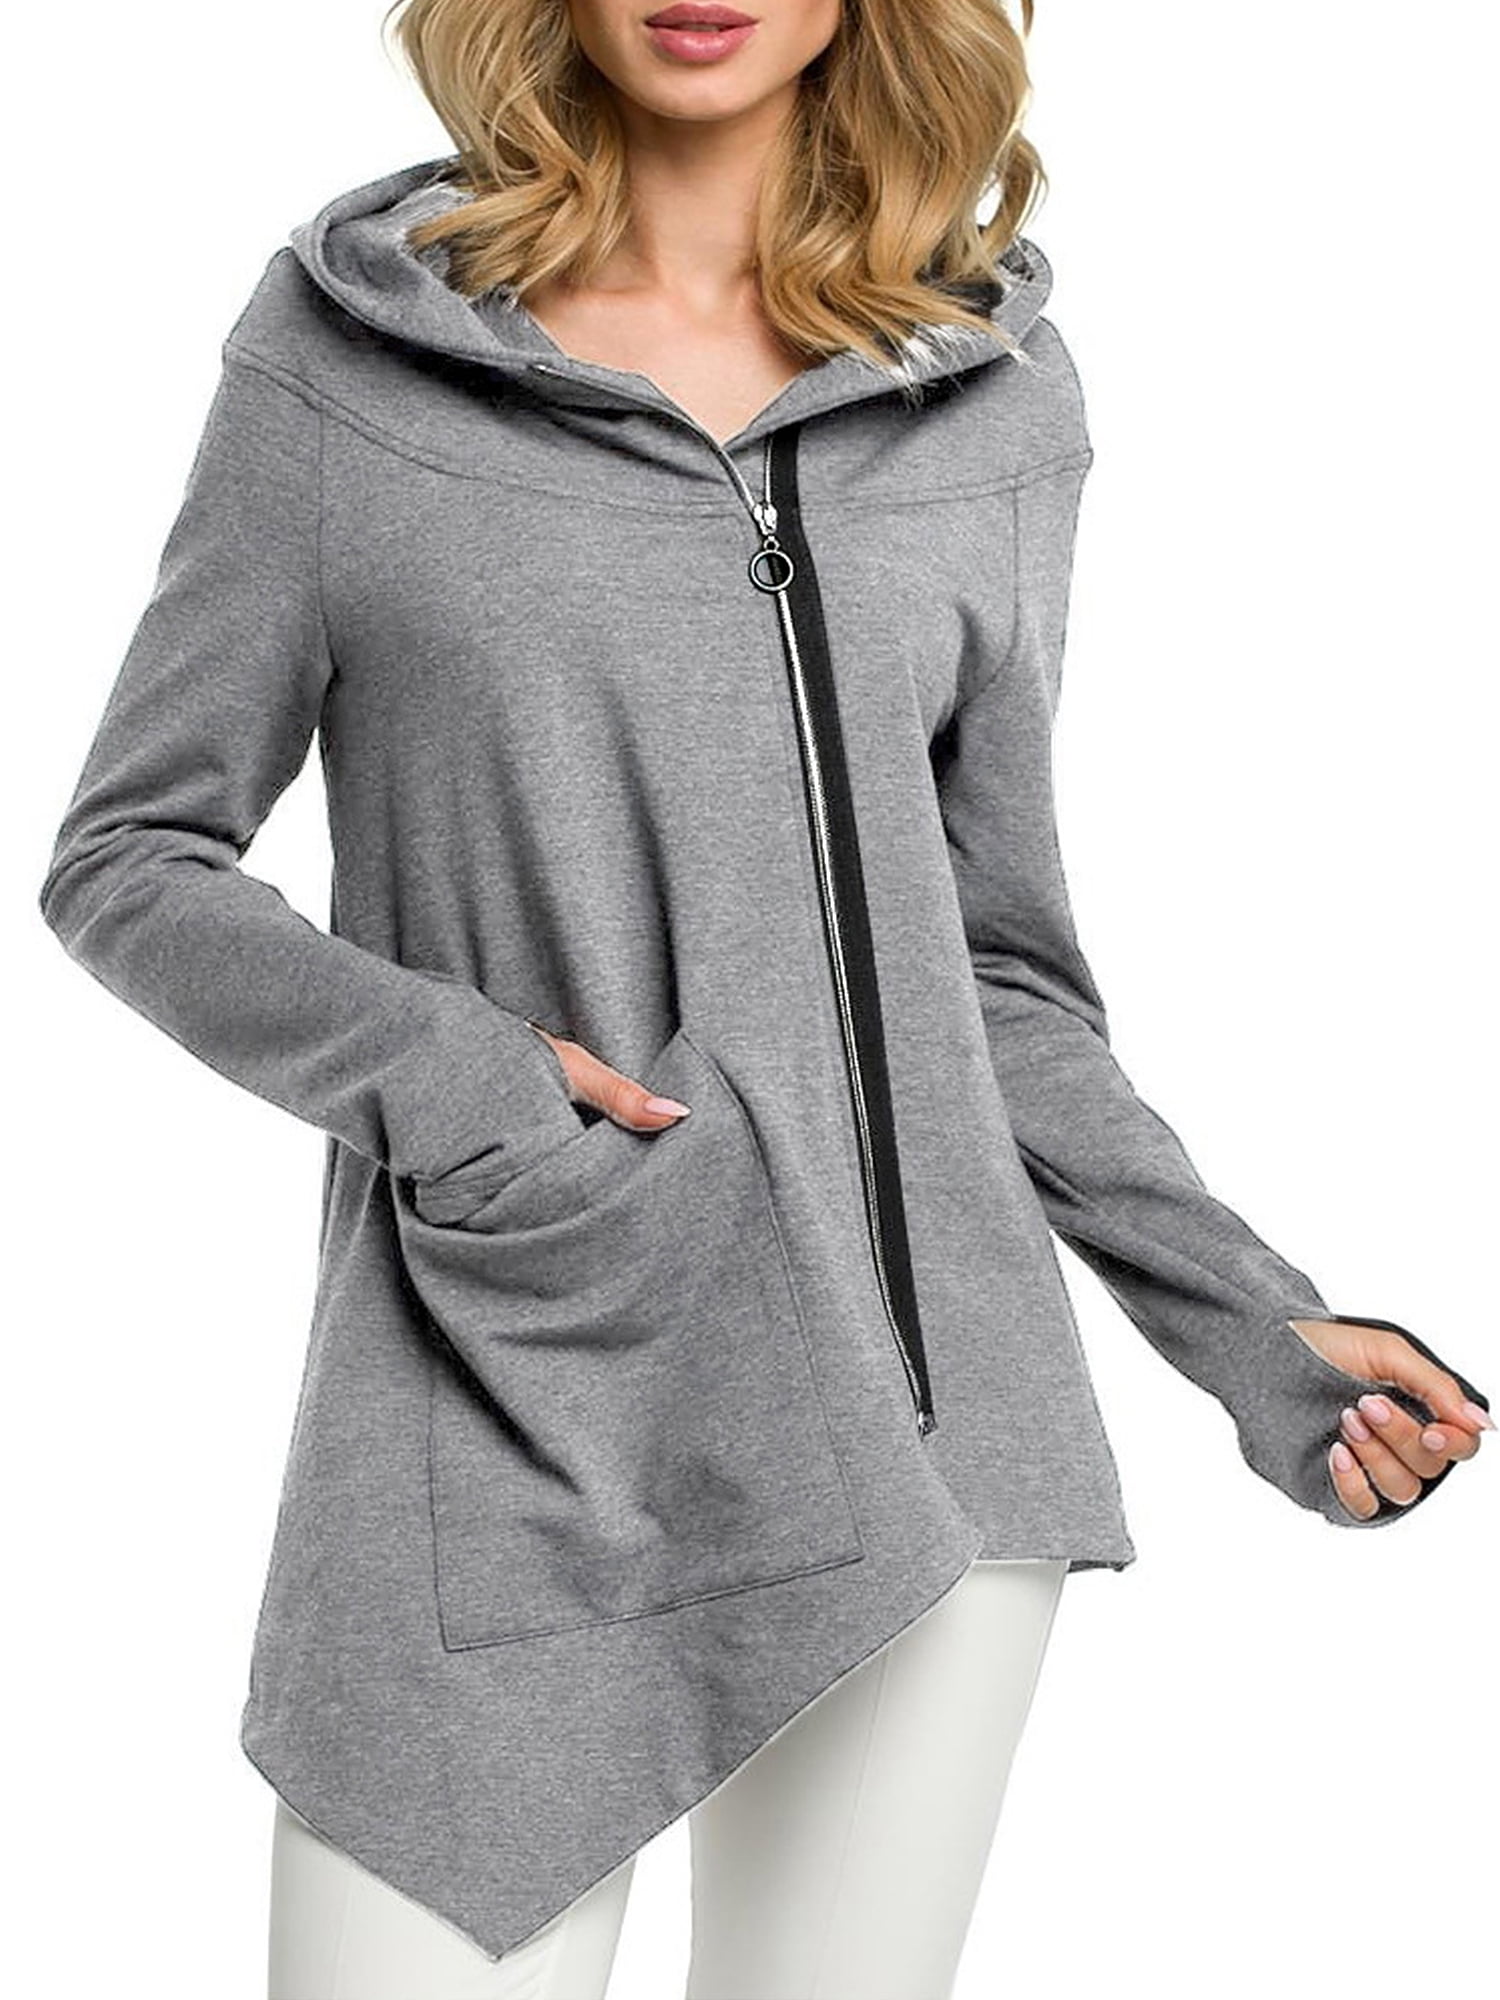 Women Hooded Hoodie Jumper Sweater Coat Sleeve Long Tops Sweatshirt Pullover 